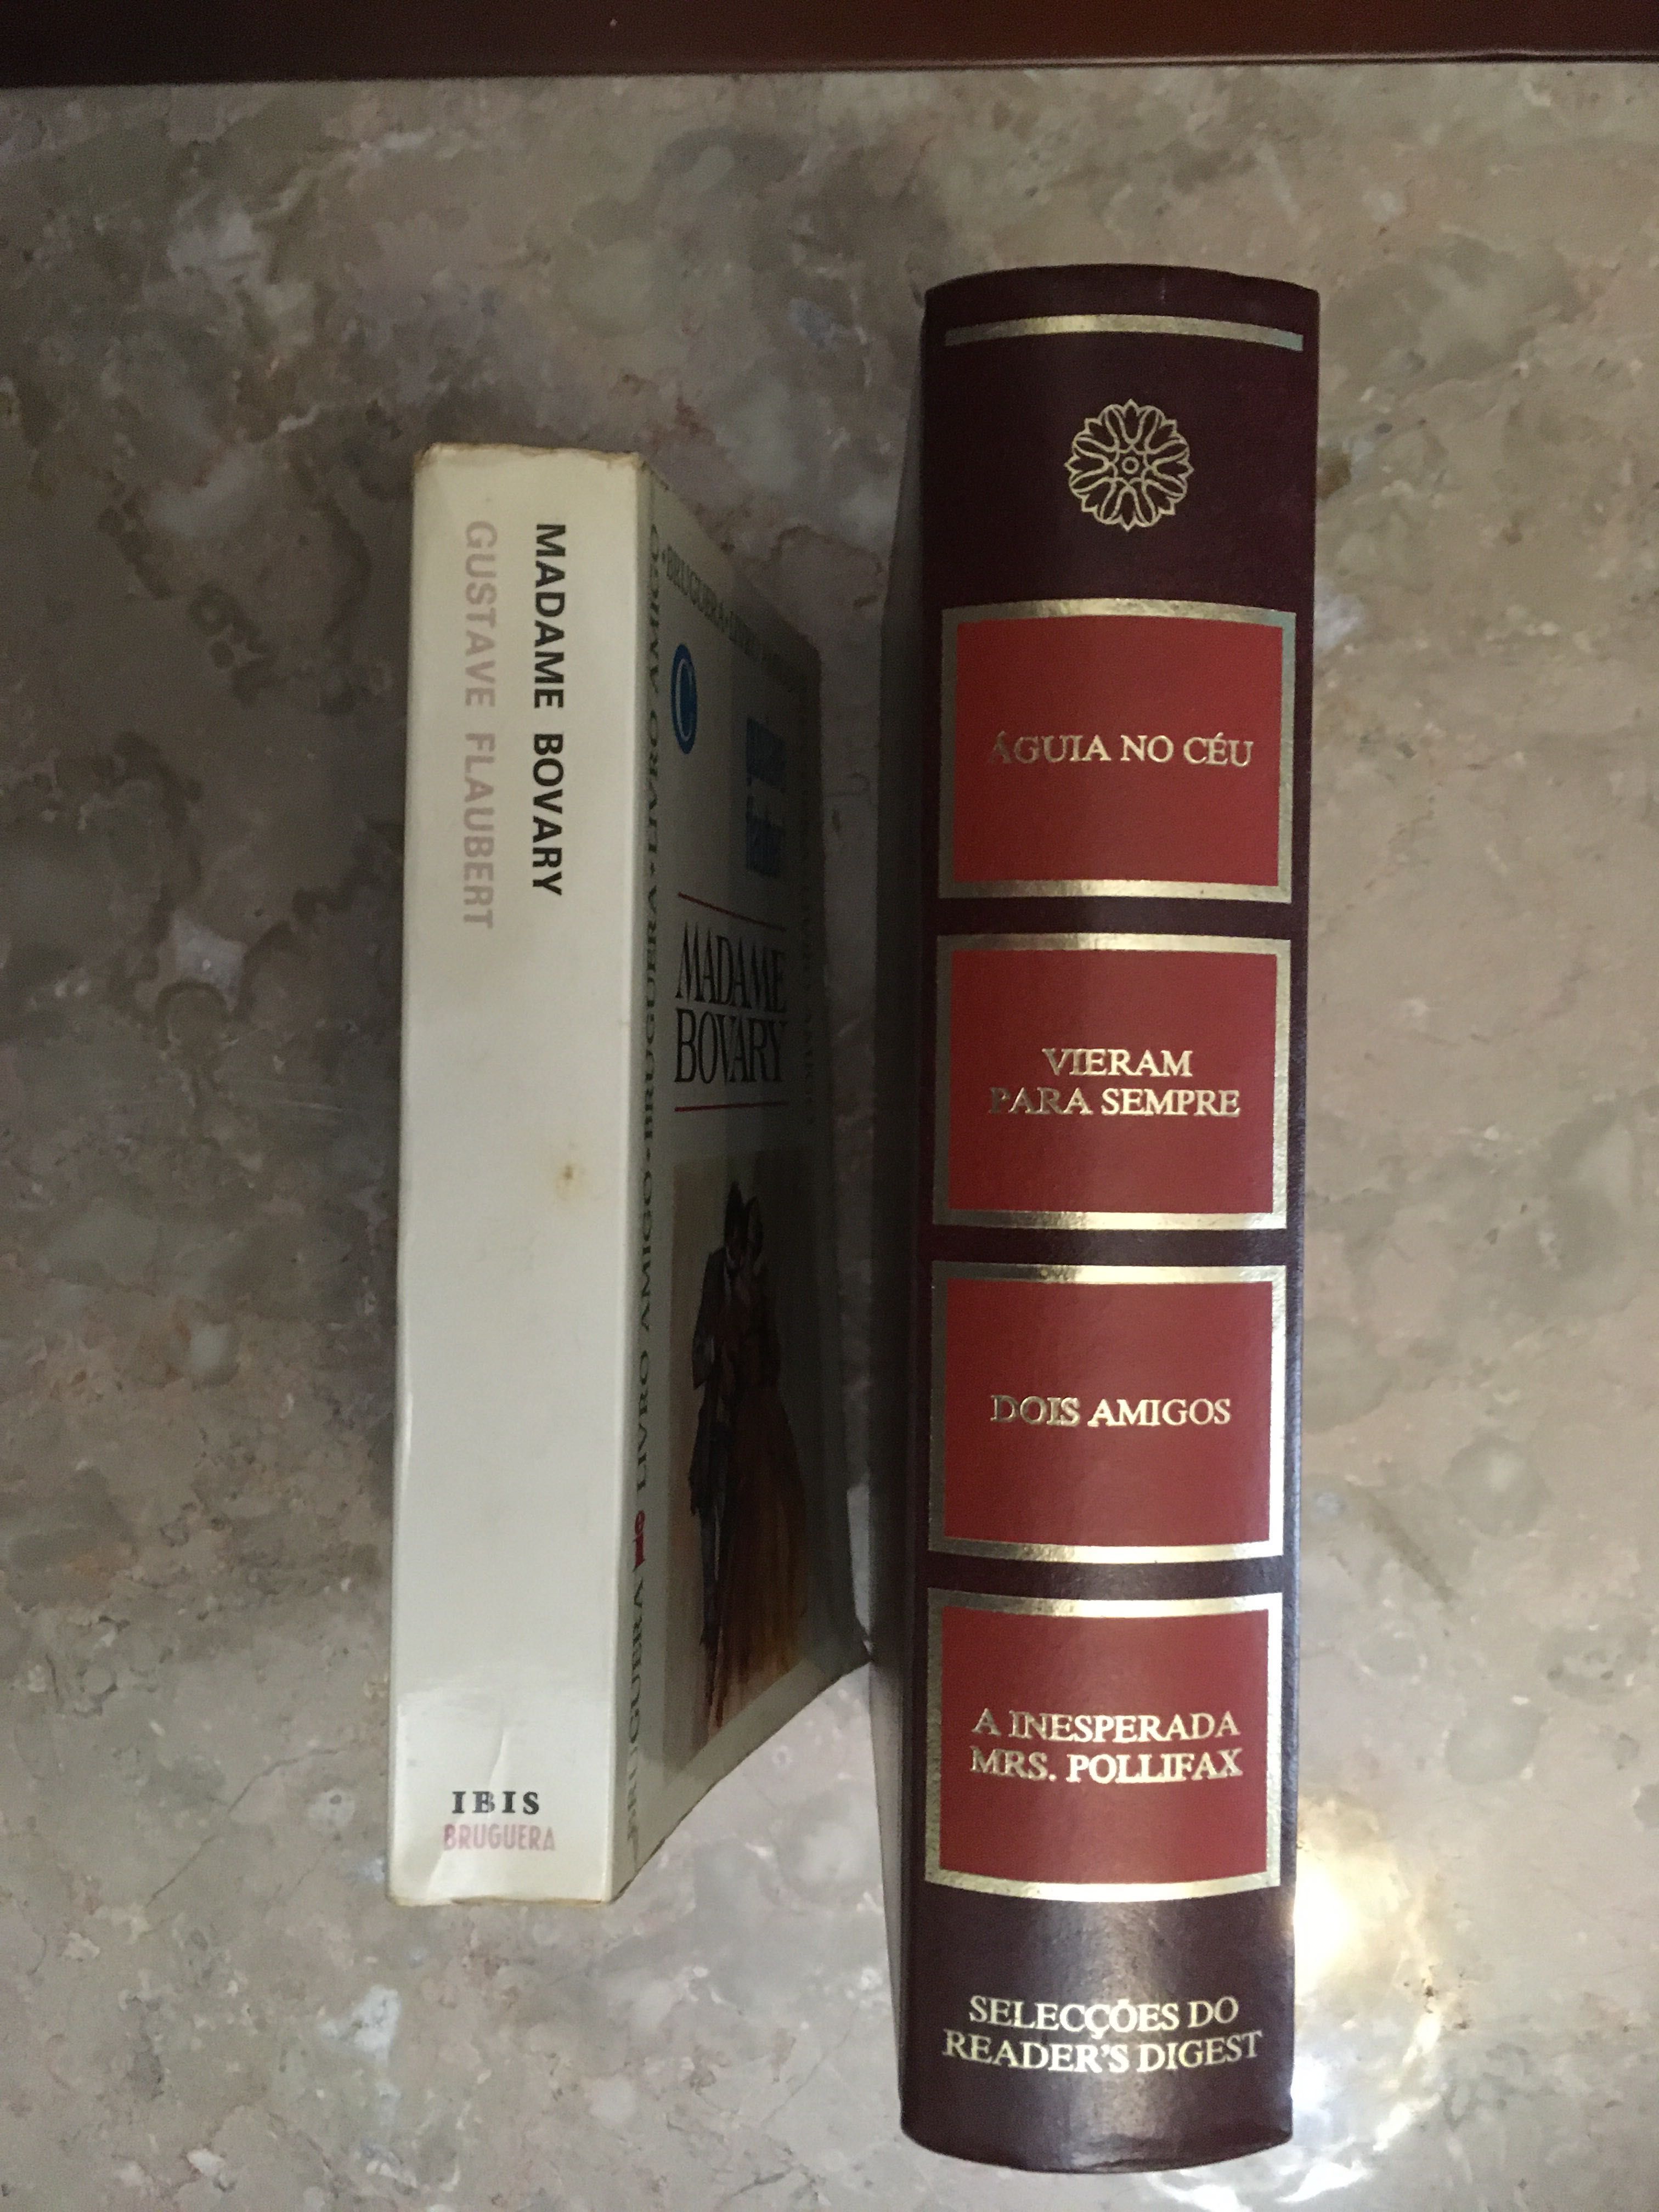 Livros antigos 1969 e 1987